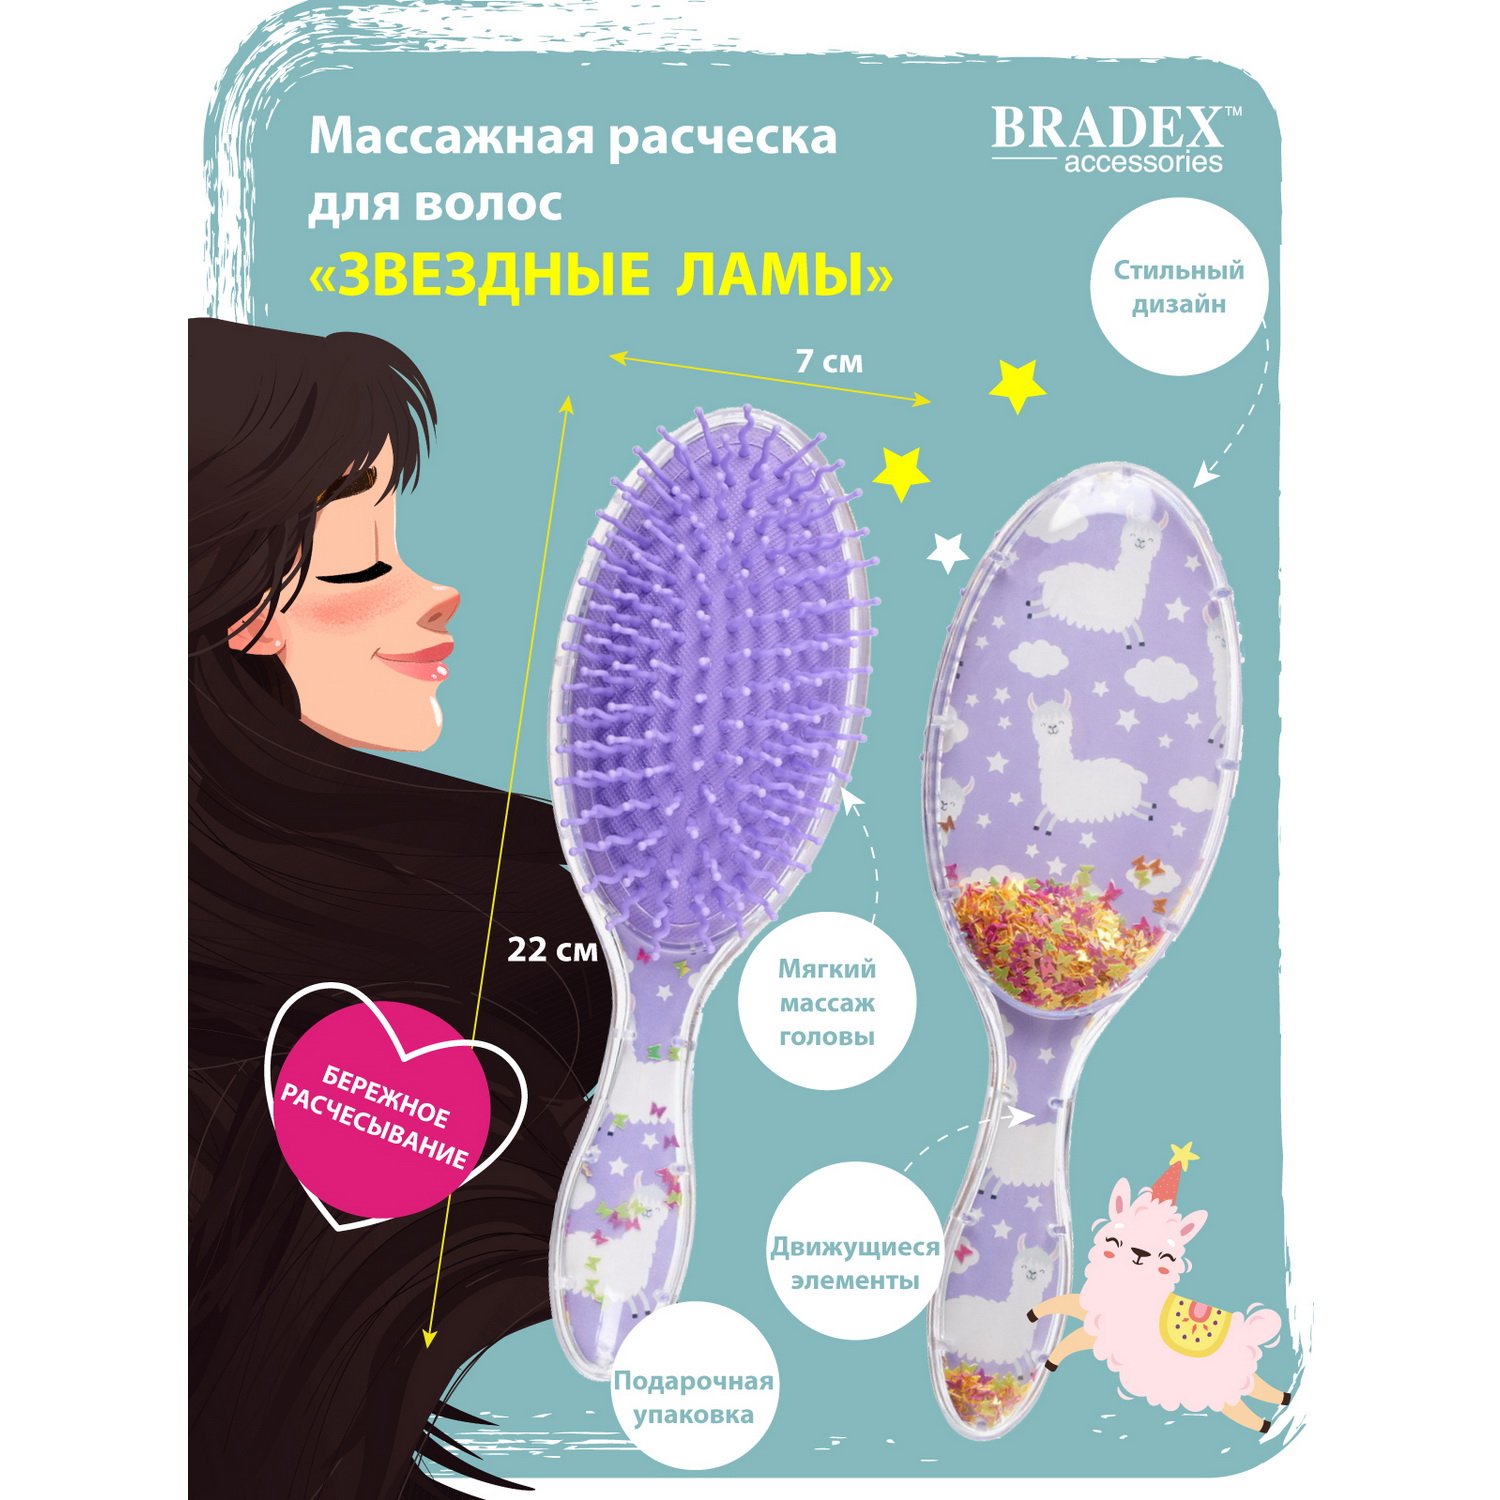 Расческа для волос Bradex массажная Звездные ламы - фото 7